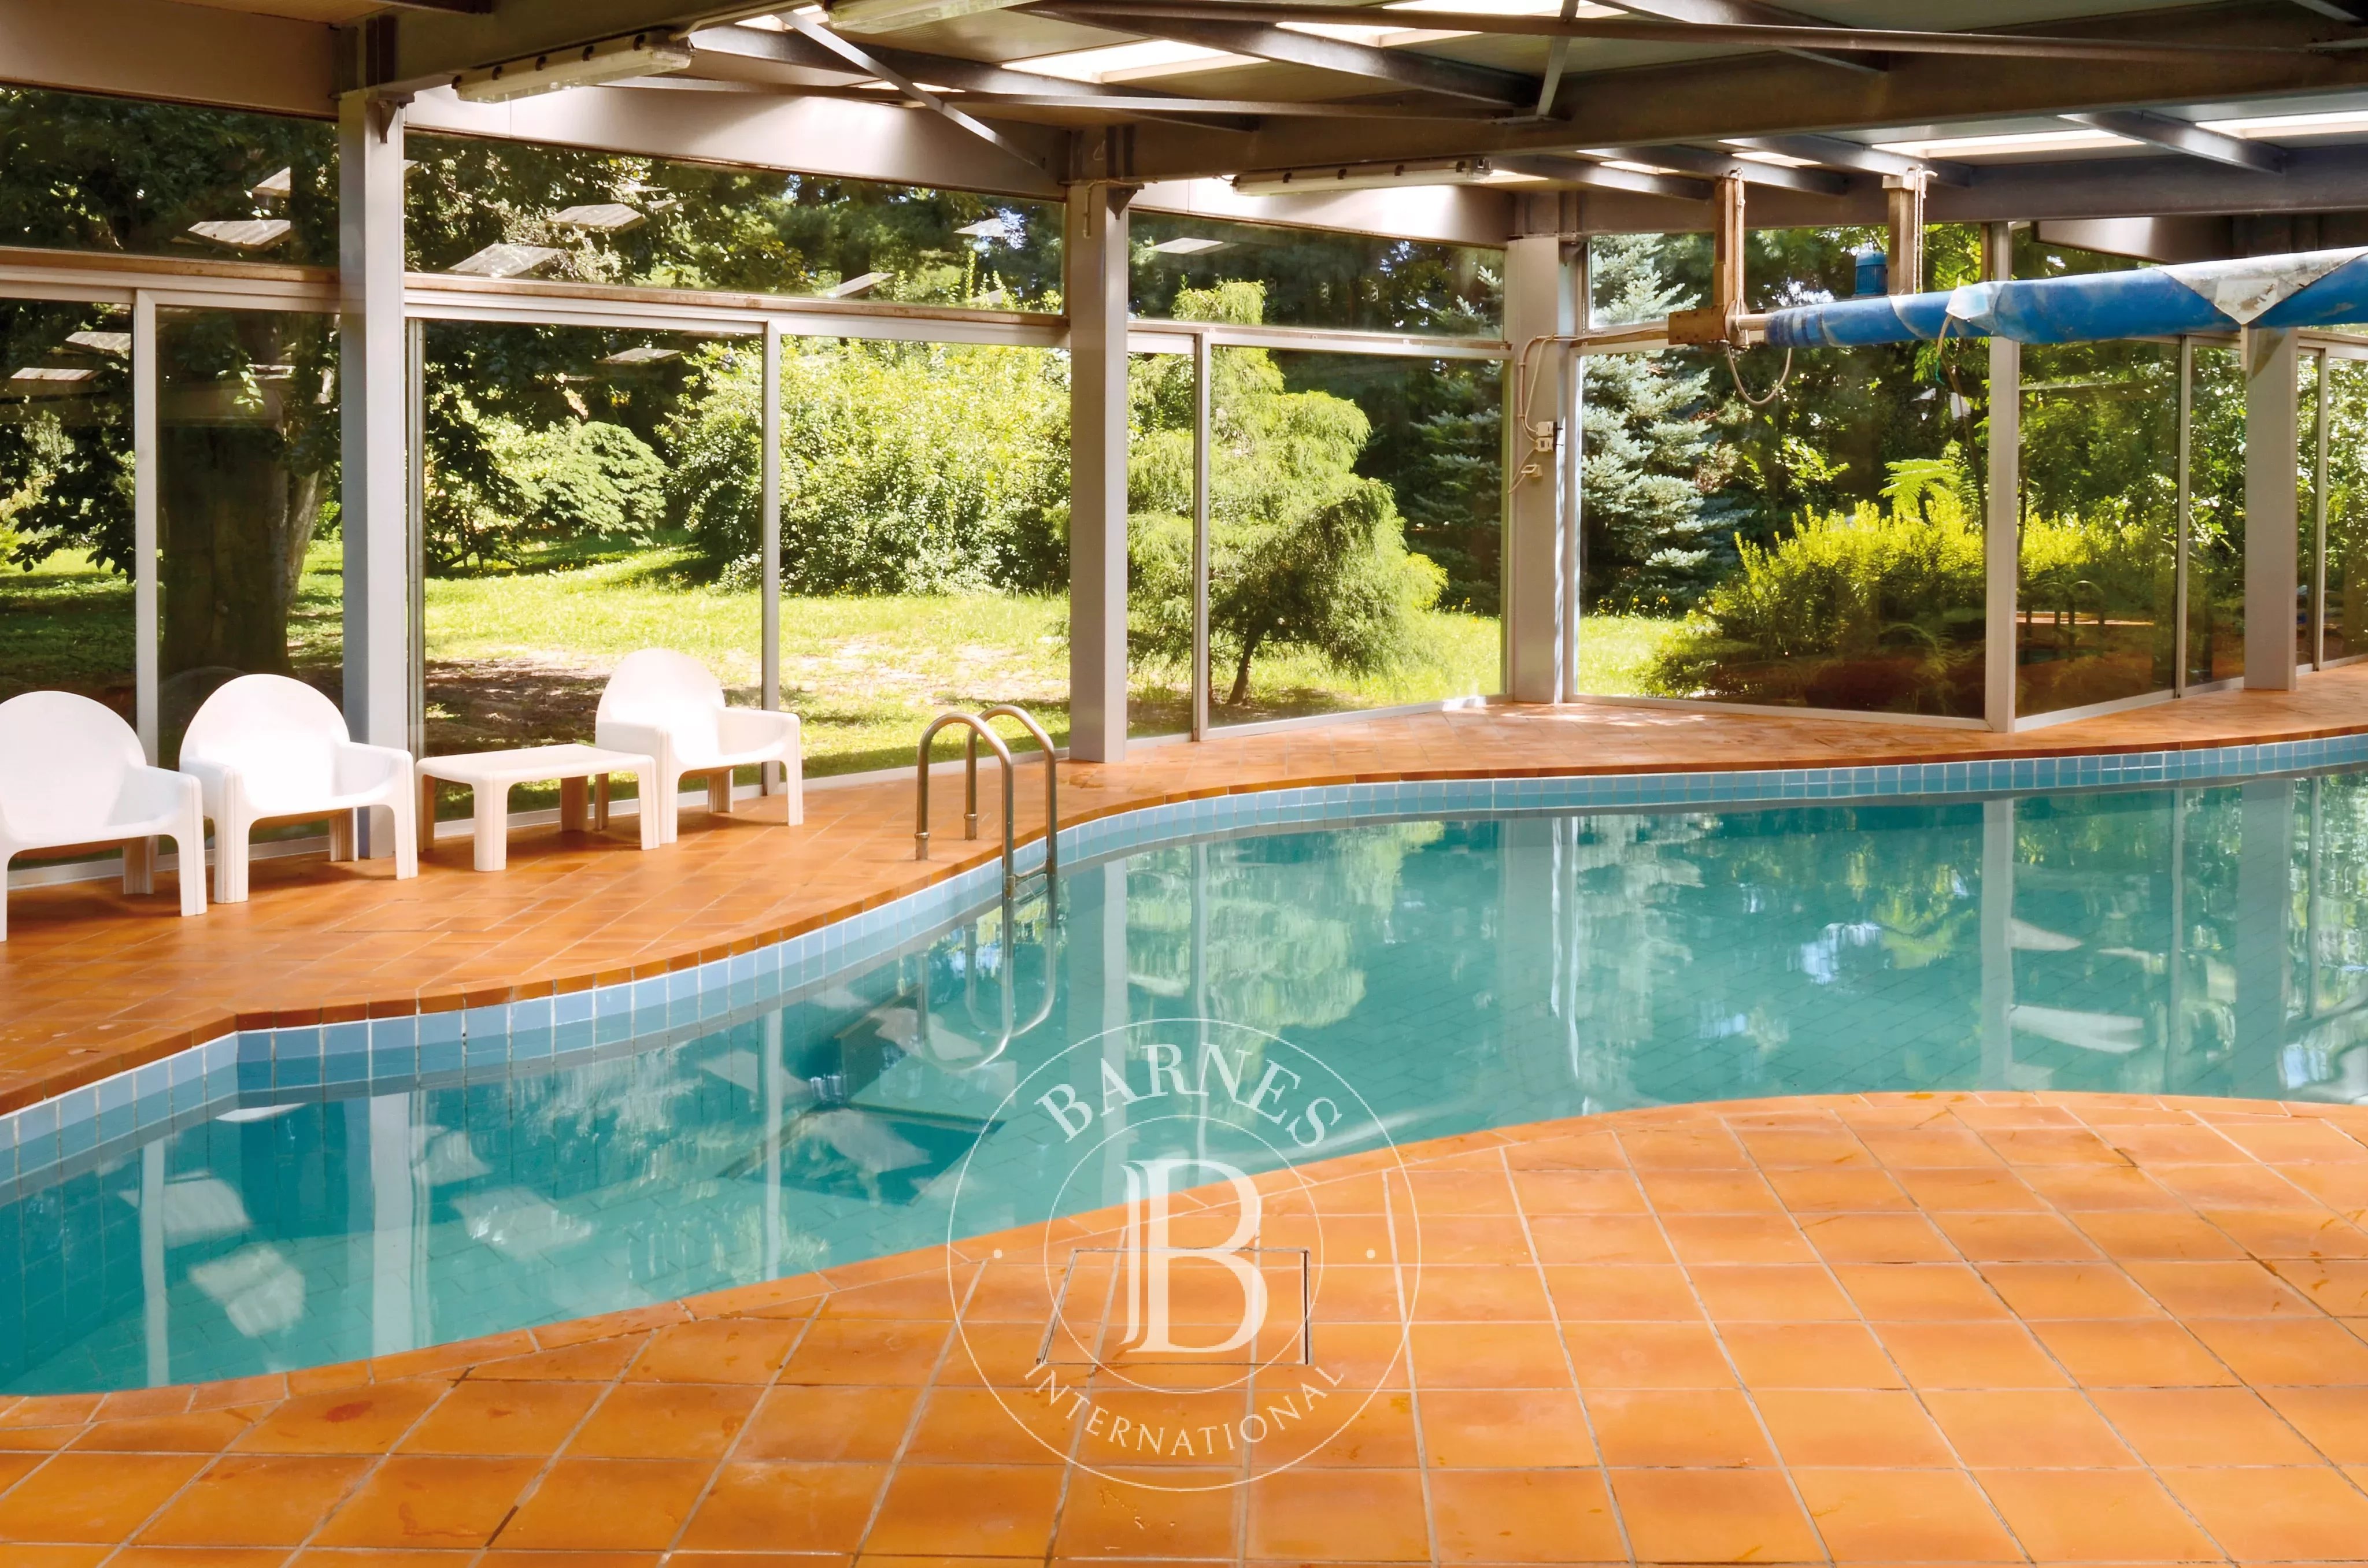 Prestigious villa with indoor pool, stable and park. Borgomanero. Area Lakes: Maggiore and d'Orta - picture 5 title=